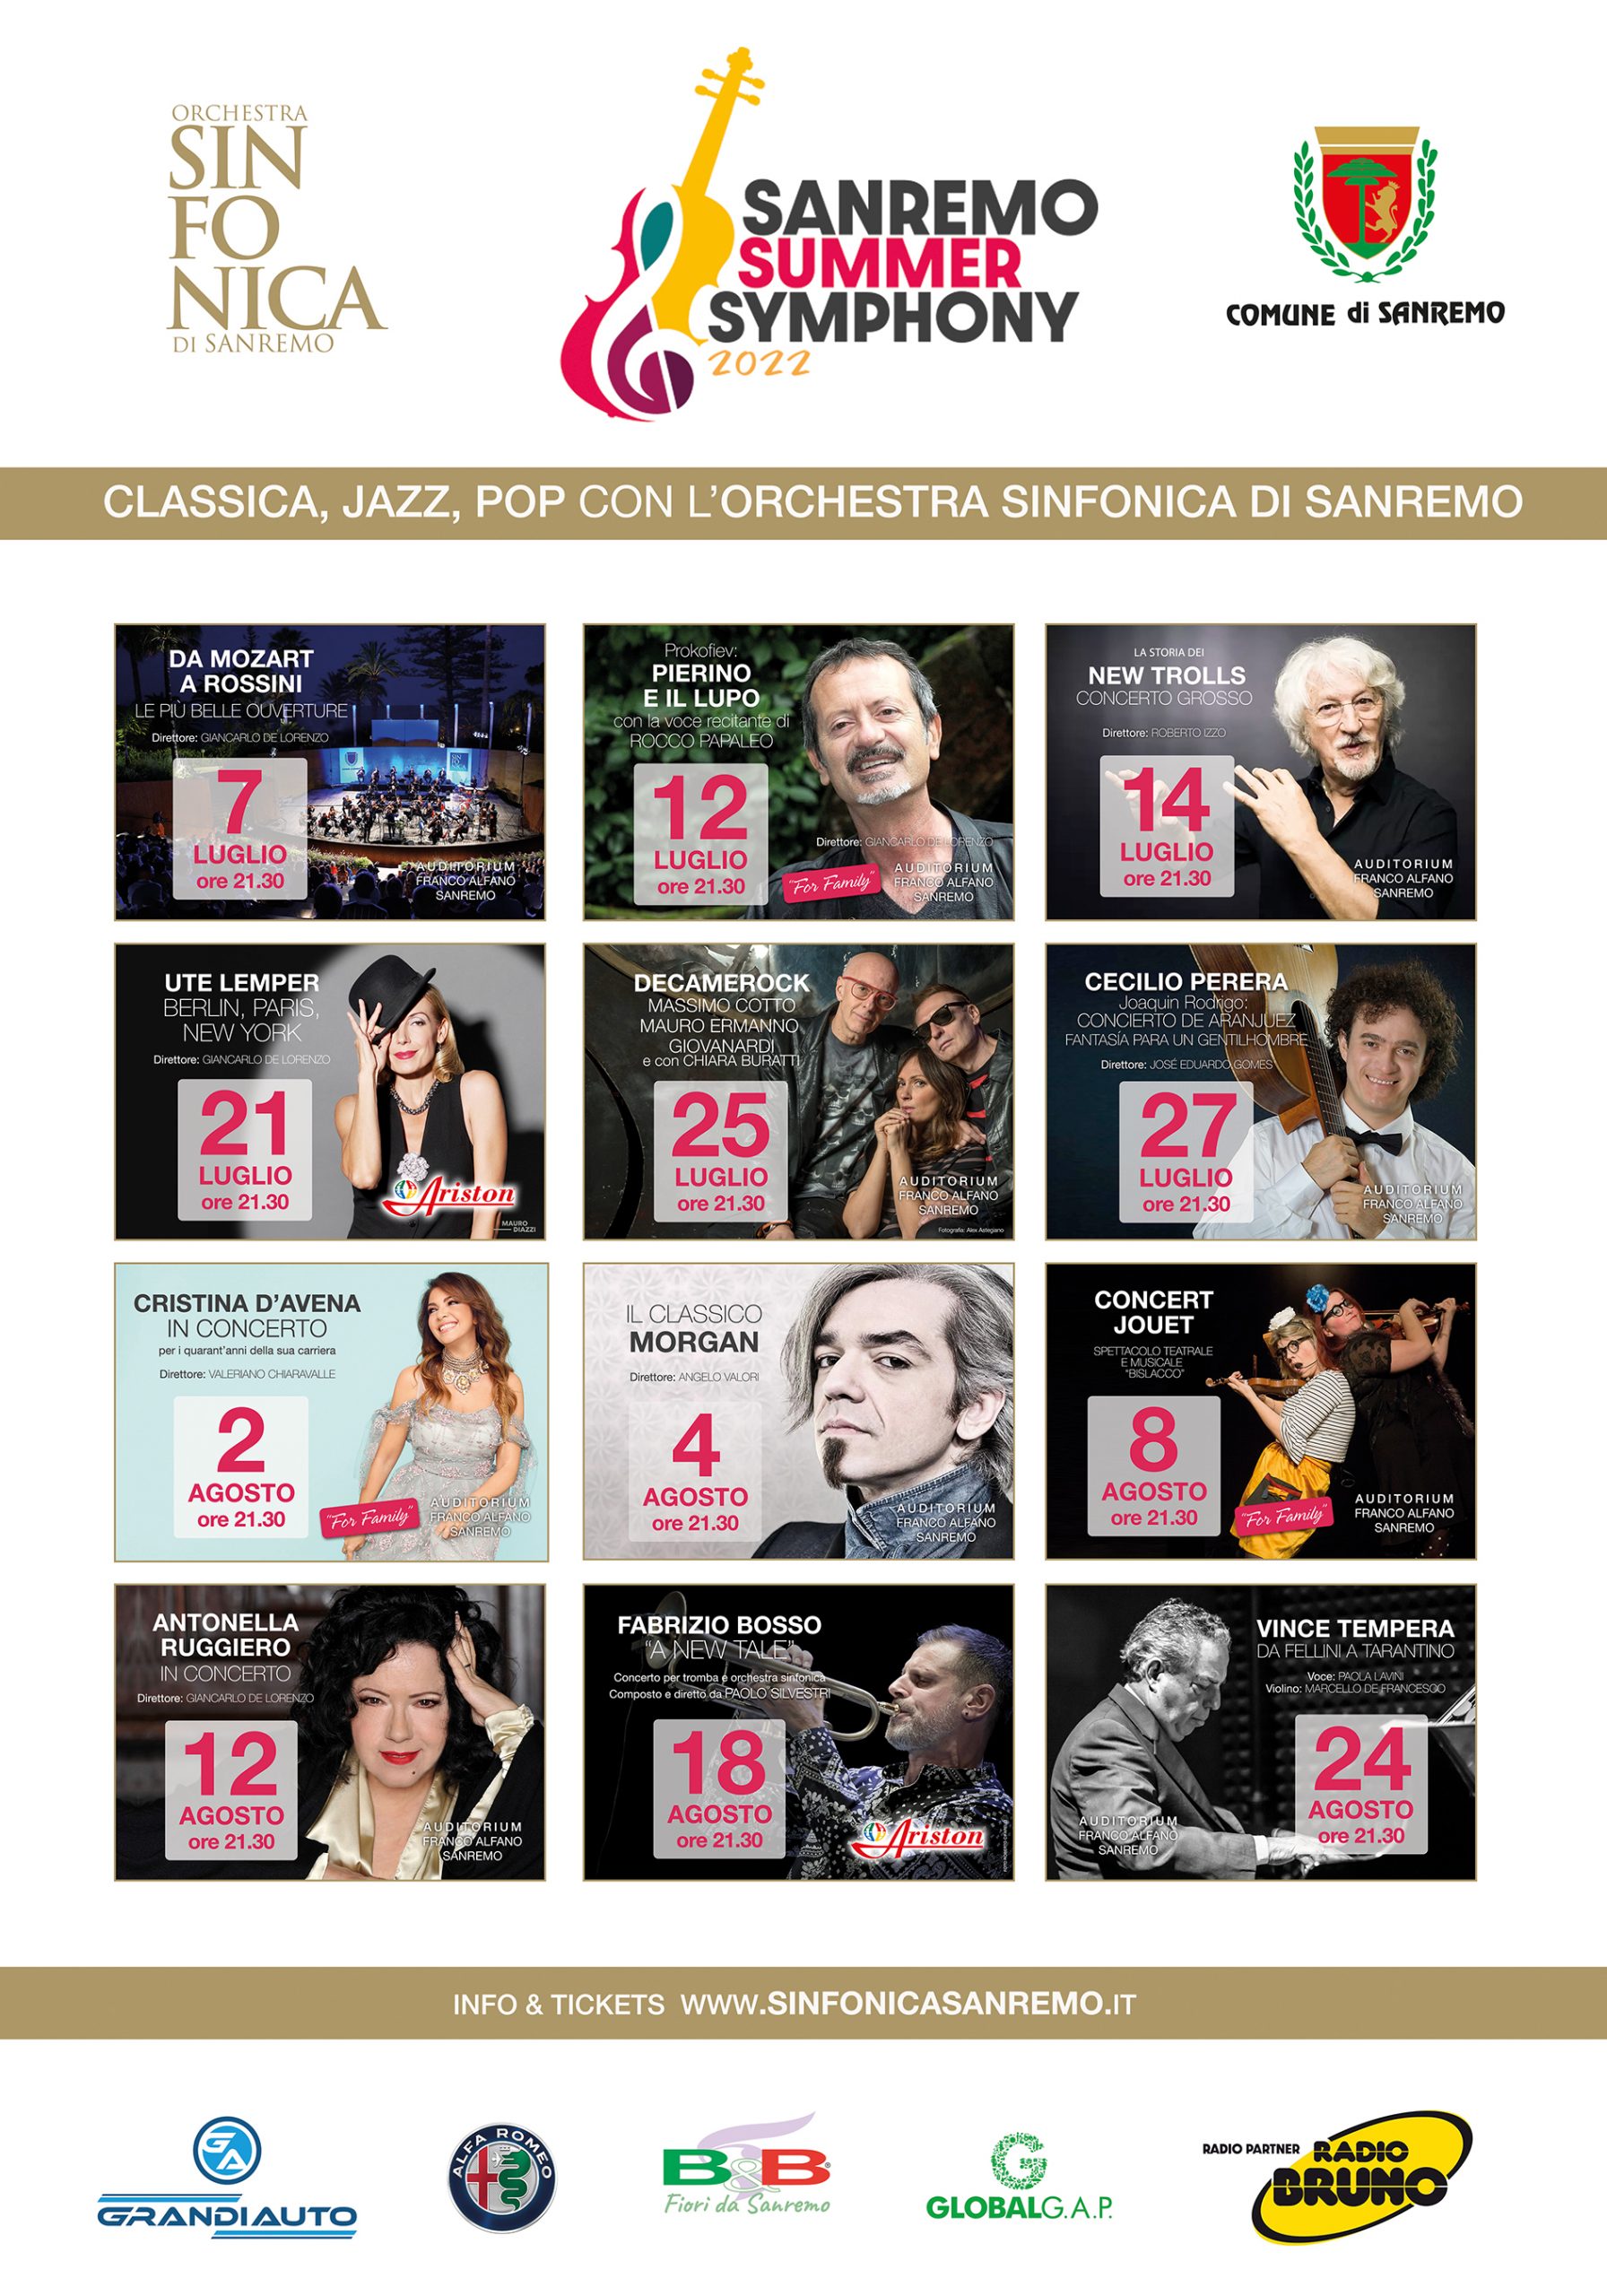 Sanremo Summer Symphony 2022 grande musica e spettacolo per tutta l'estate!